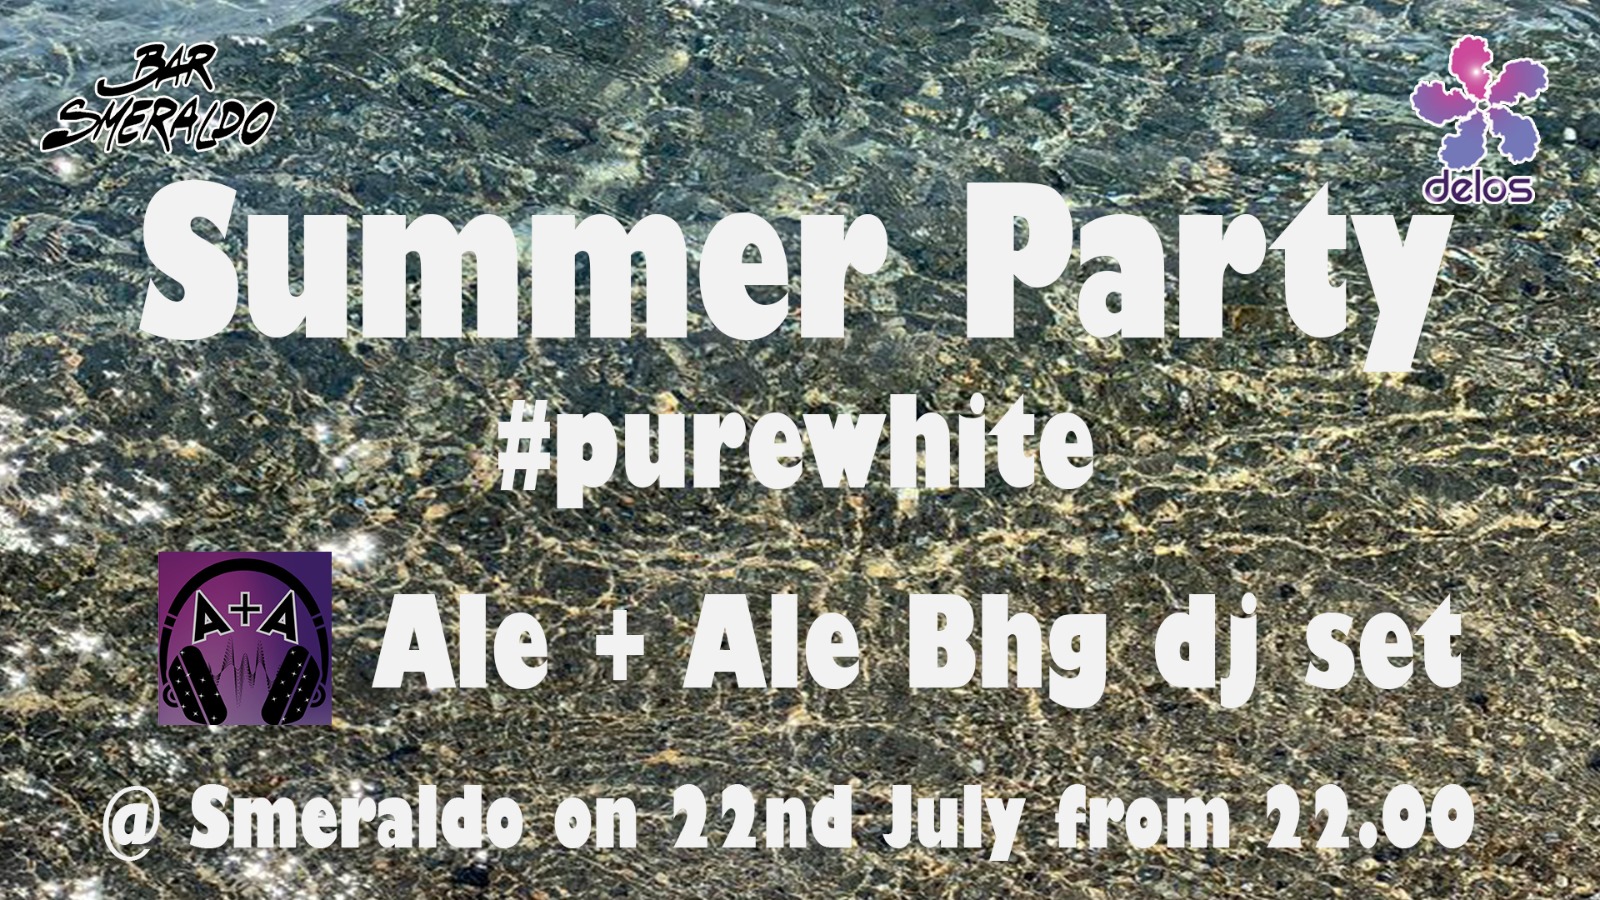 22 luglio: purewhite party